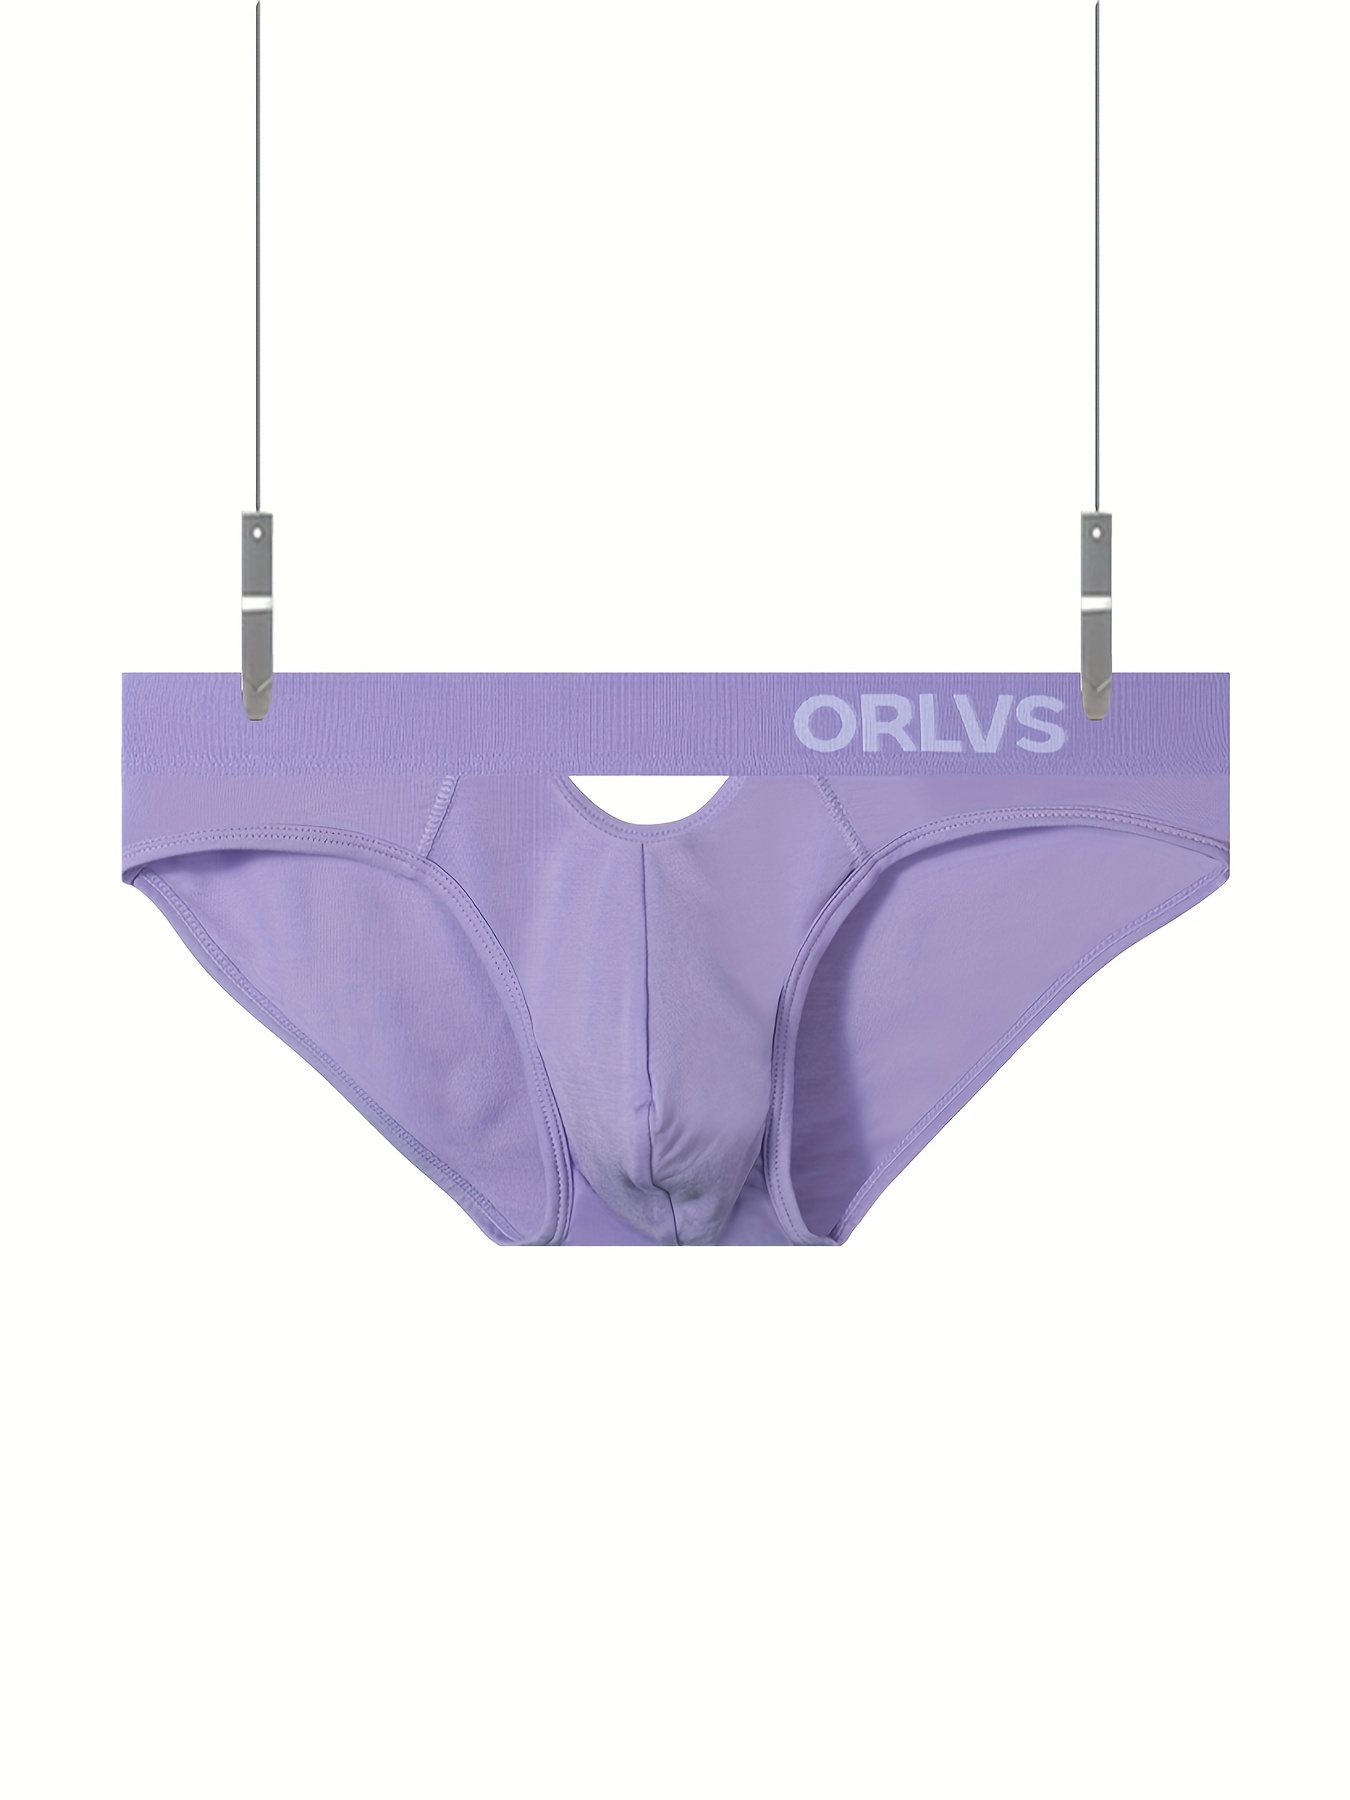 Men's Sexy Underwear Low Waist Pouch Briefs Panties Soft